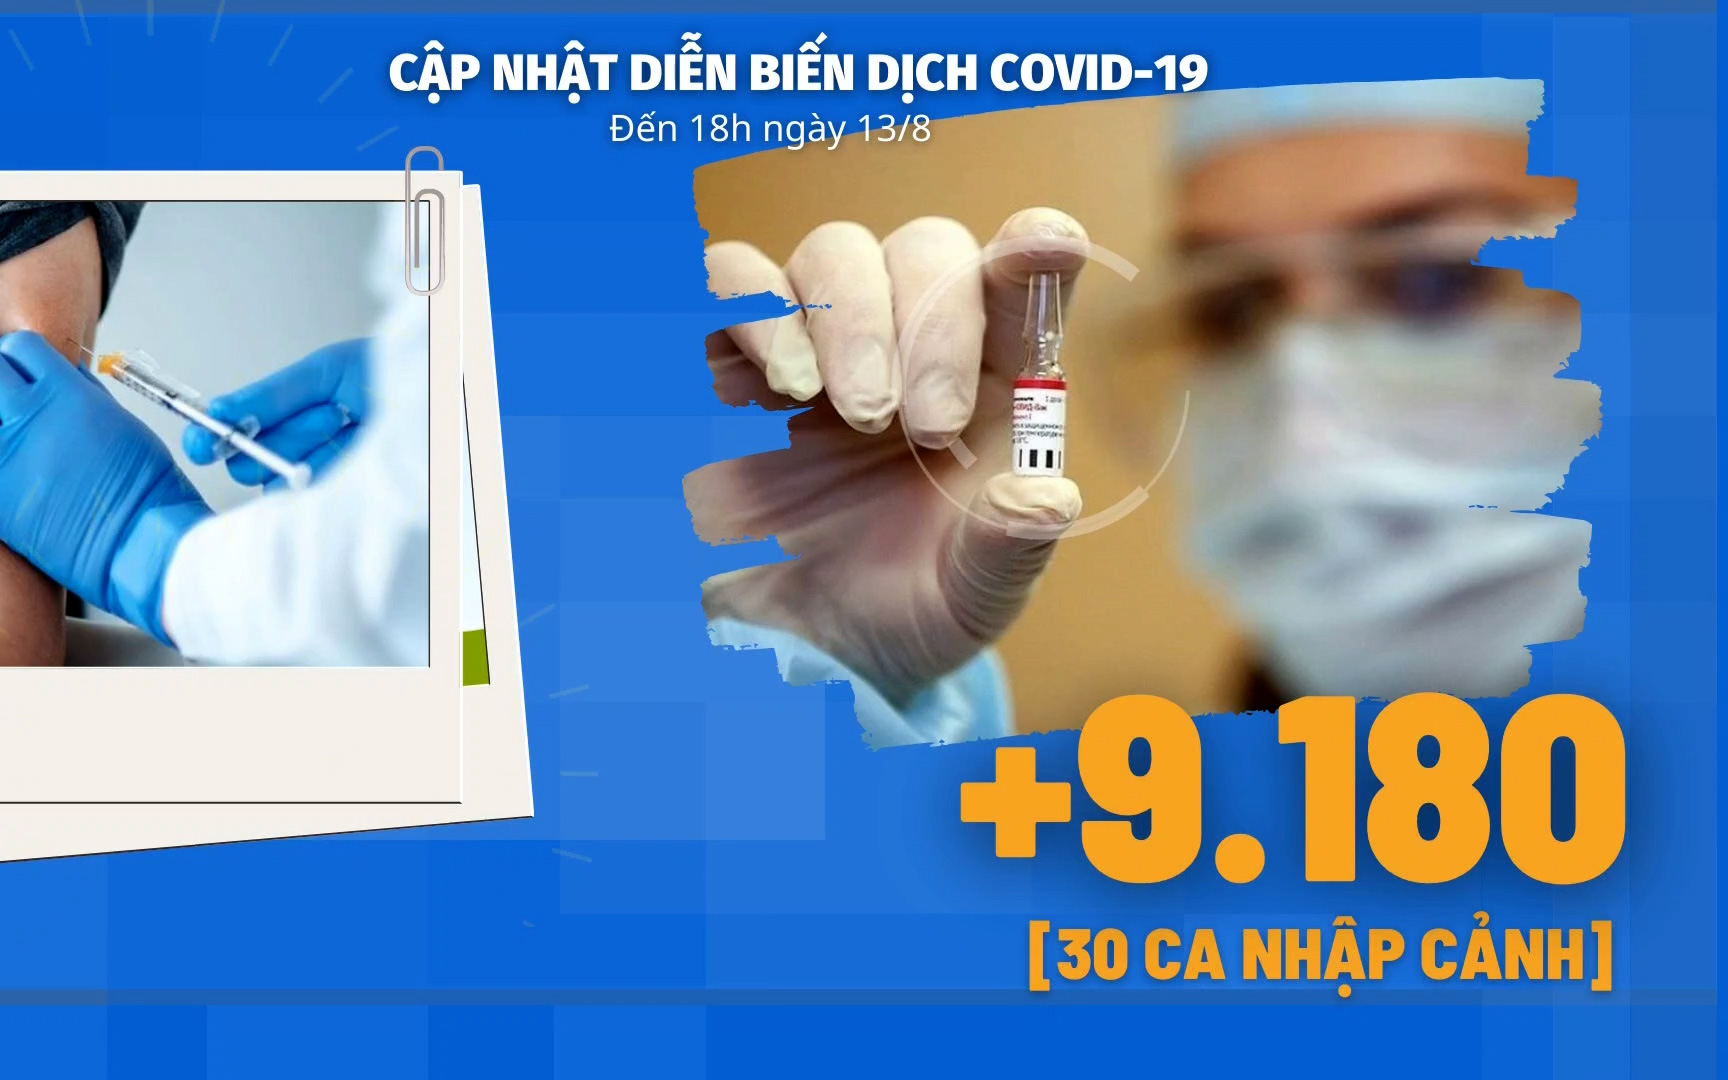 Diễn biến dịch Covid-19 ngày 13/8: Bộ Y tế tiếp nhận trang thiết bị phòng, chống dịch Covid-19 từ Chính phủ Thụy Sỹ